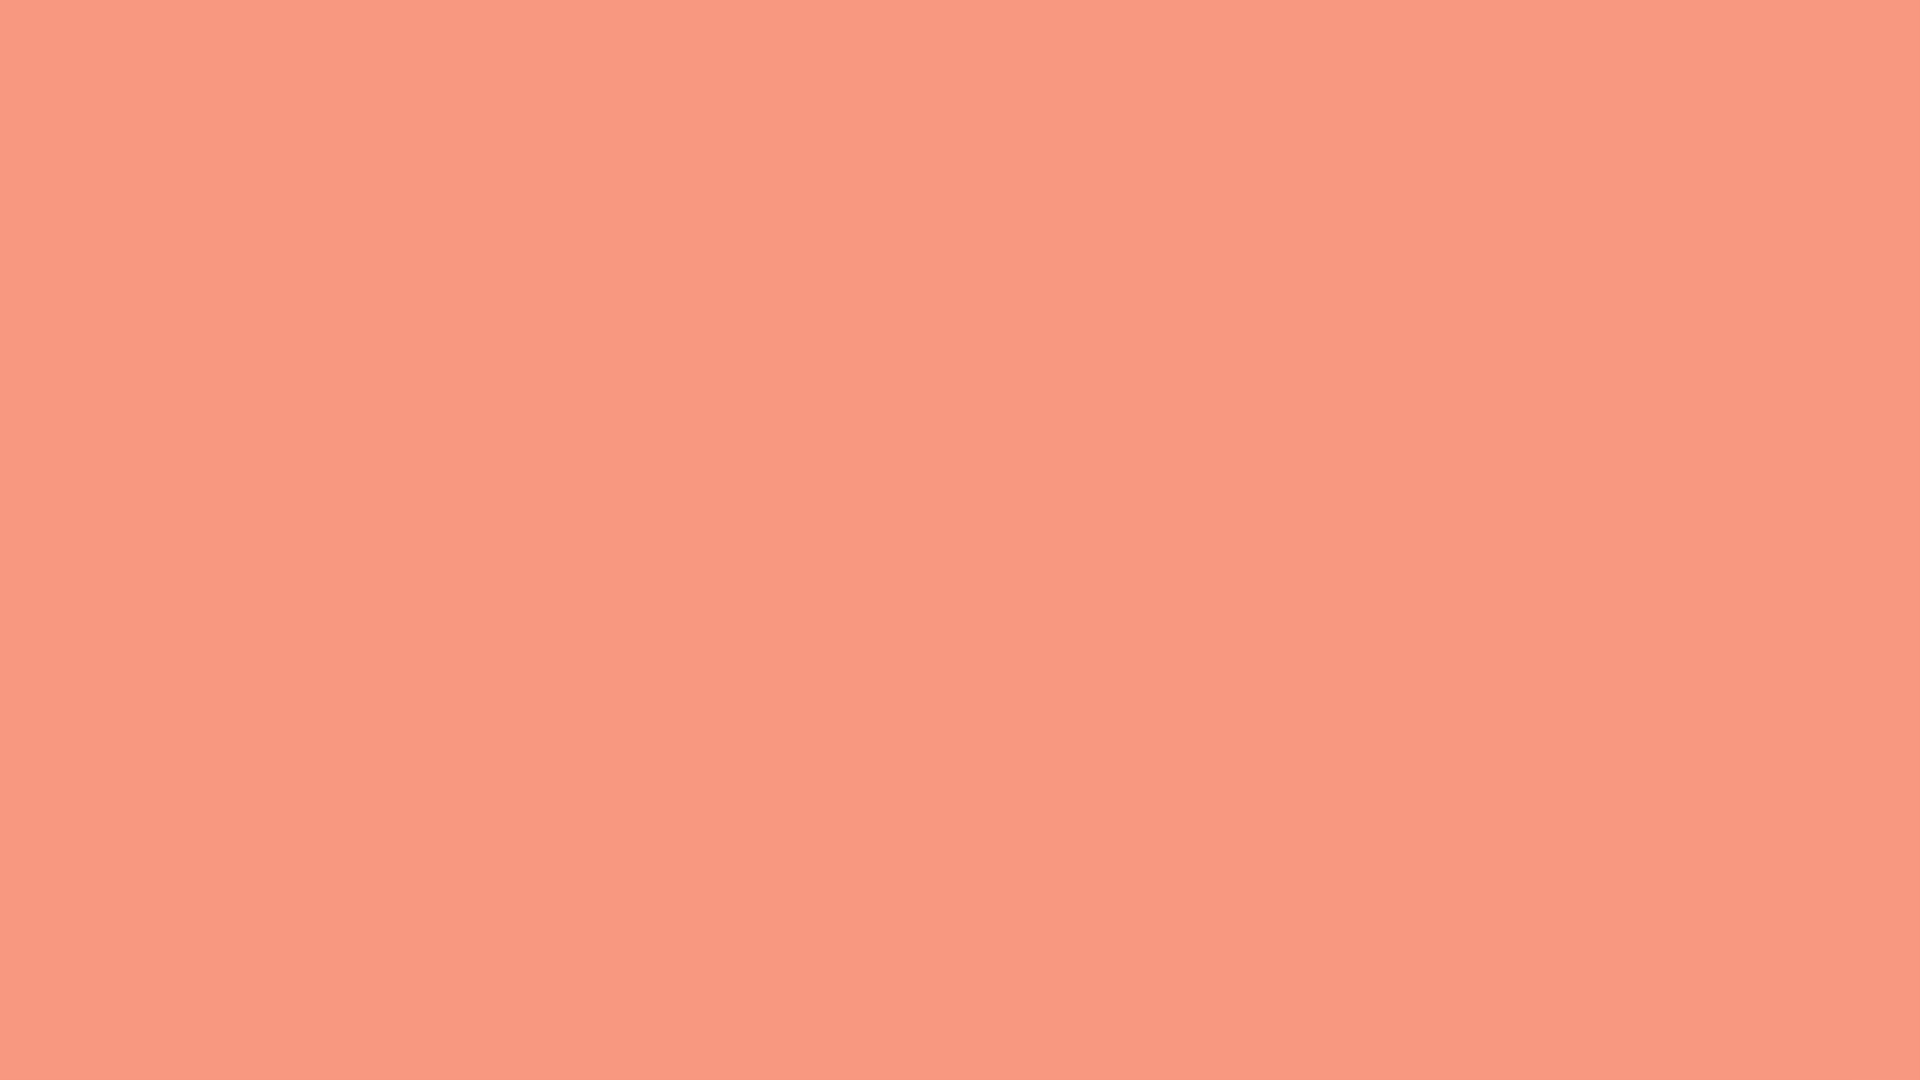 Orange To Pink Wallpapers